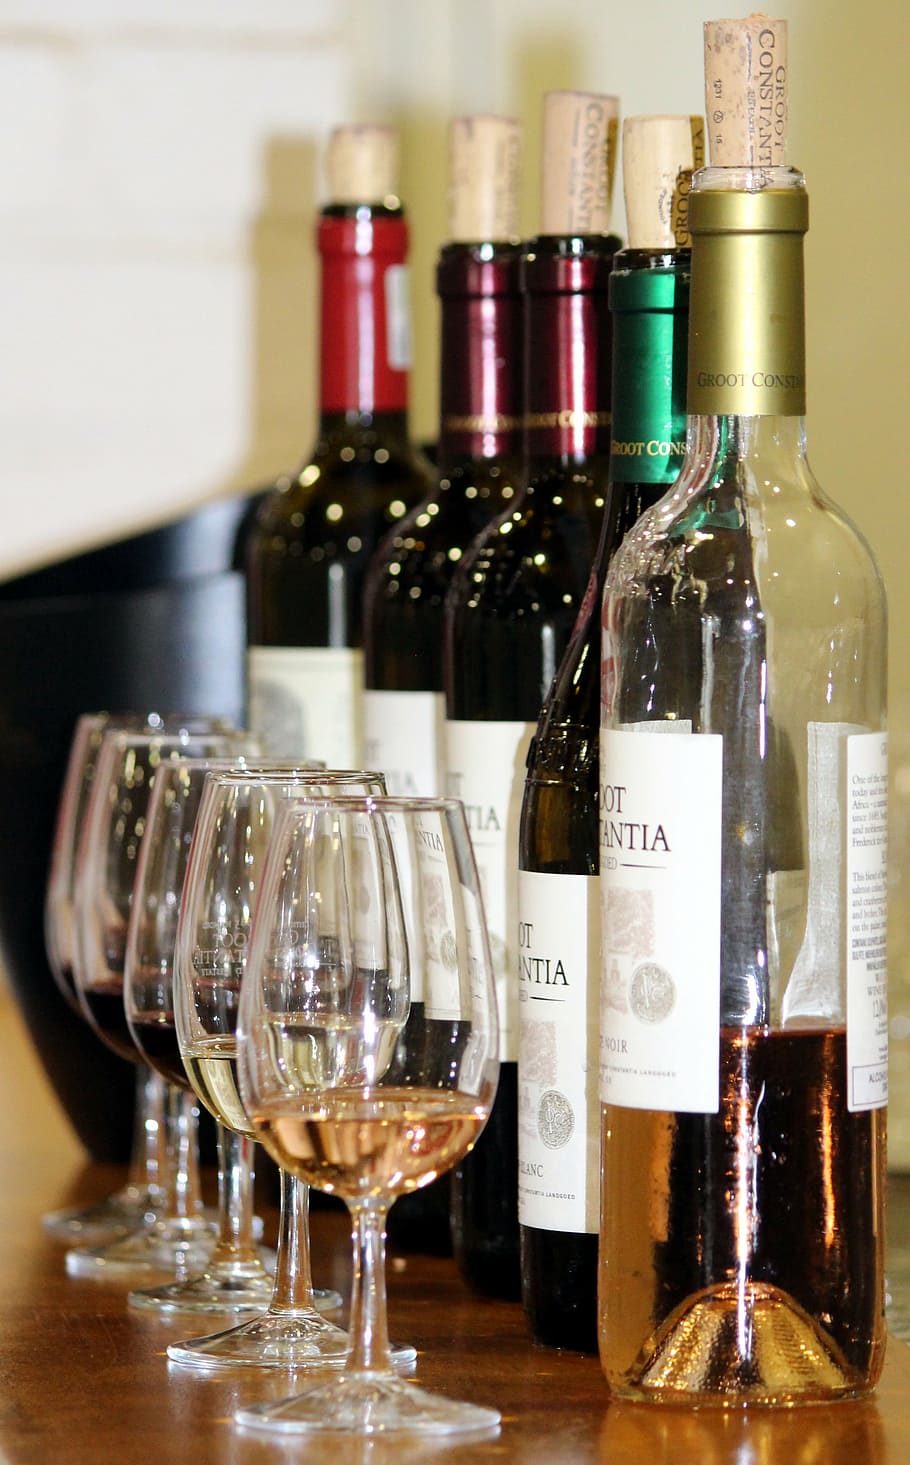 gelas berbagai macam, pencicipan anggur, gelas, botol anggur, anggur baru, anggur, prost, anggur merah, gabus, botol